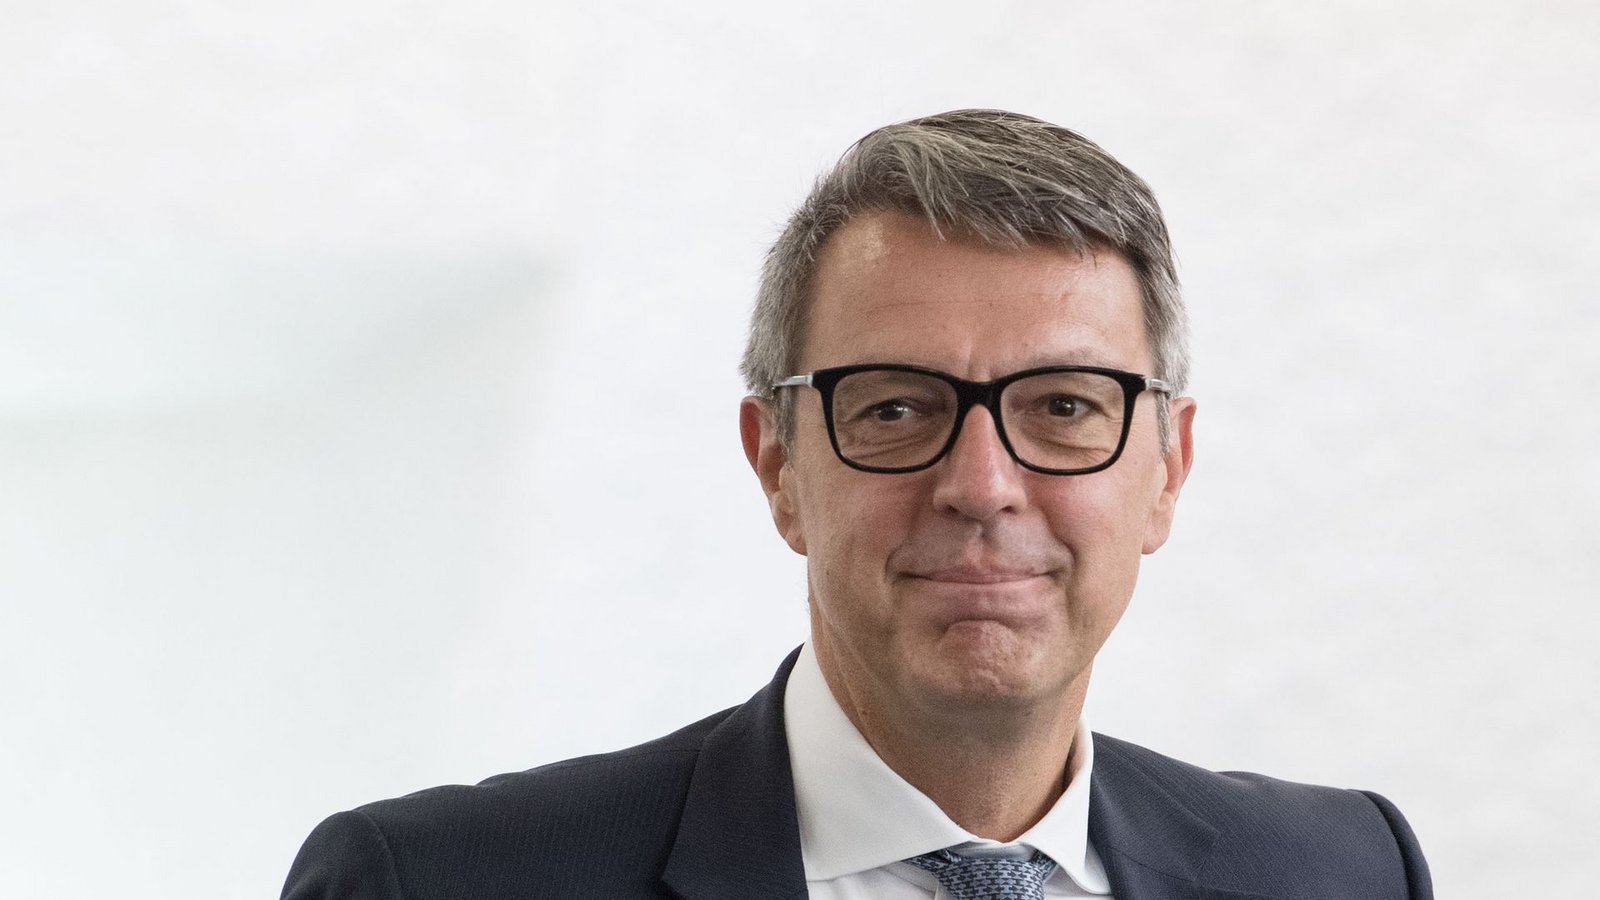 Der 53-jährige Betriebswirt Arndt Geiwitz ist einer der bekanntesten Insolvenzexperten Deutschlands.Foto: picture alliance / Marijan Murat/dpa